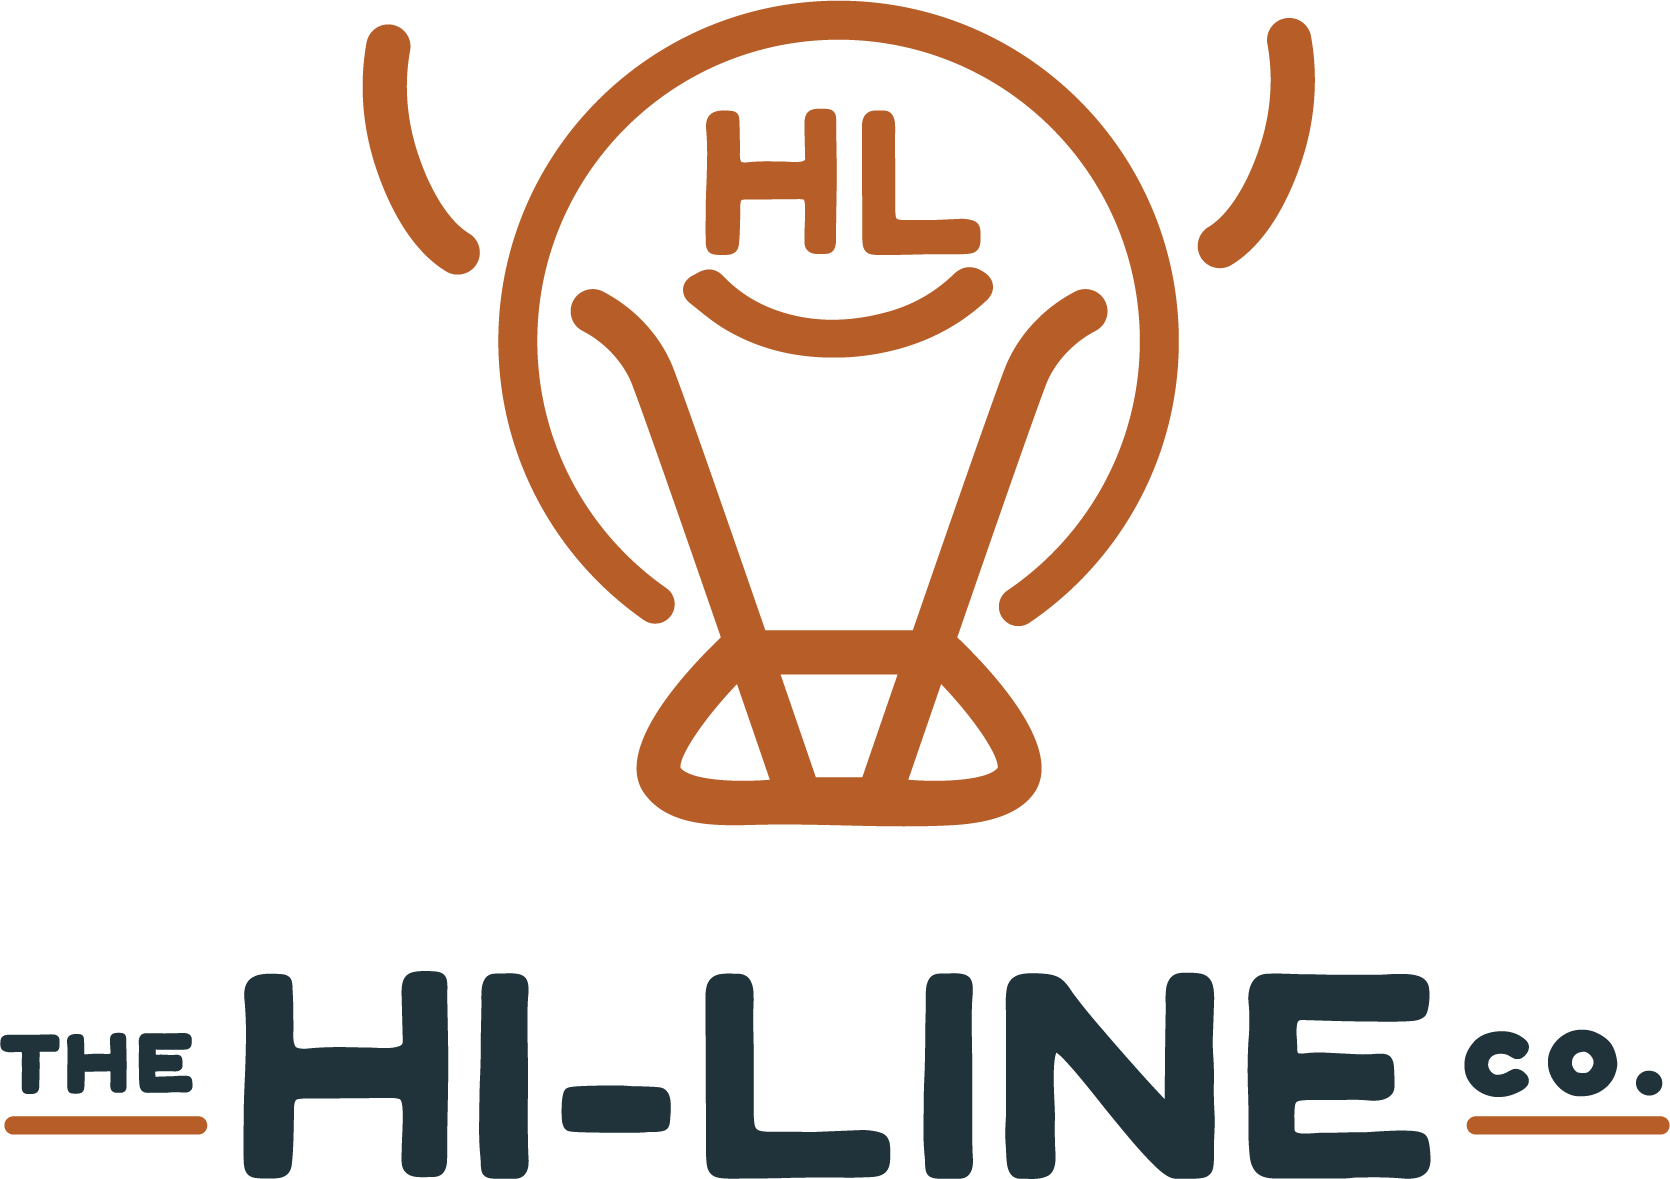 The Hi-Line Co. logo